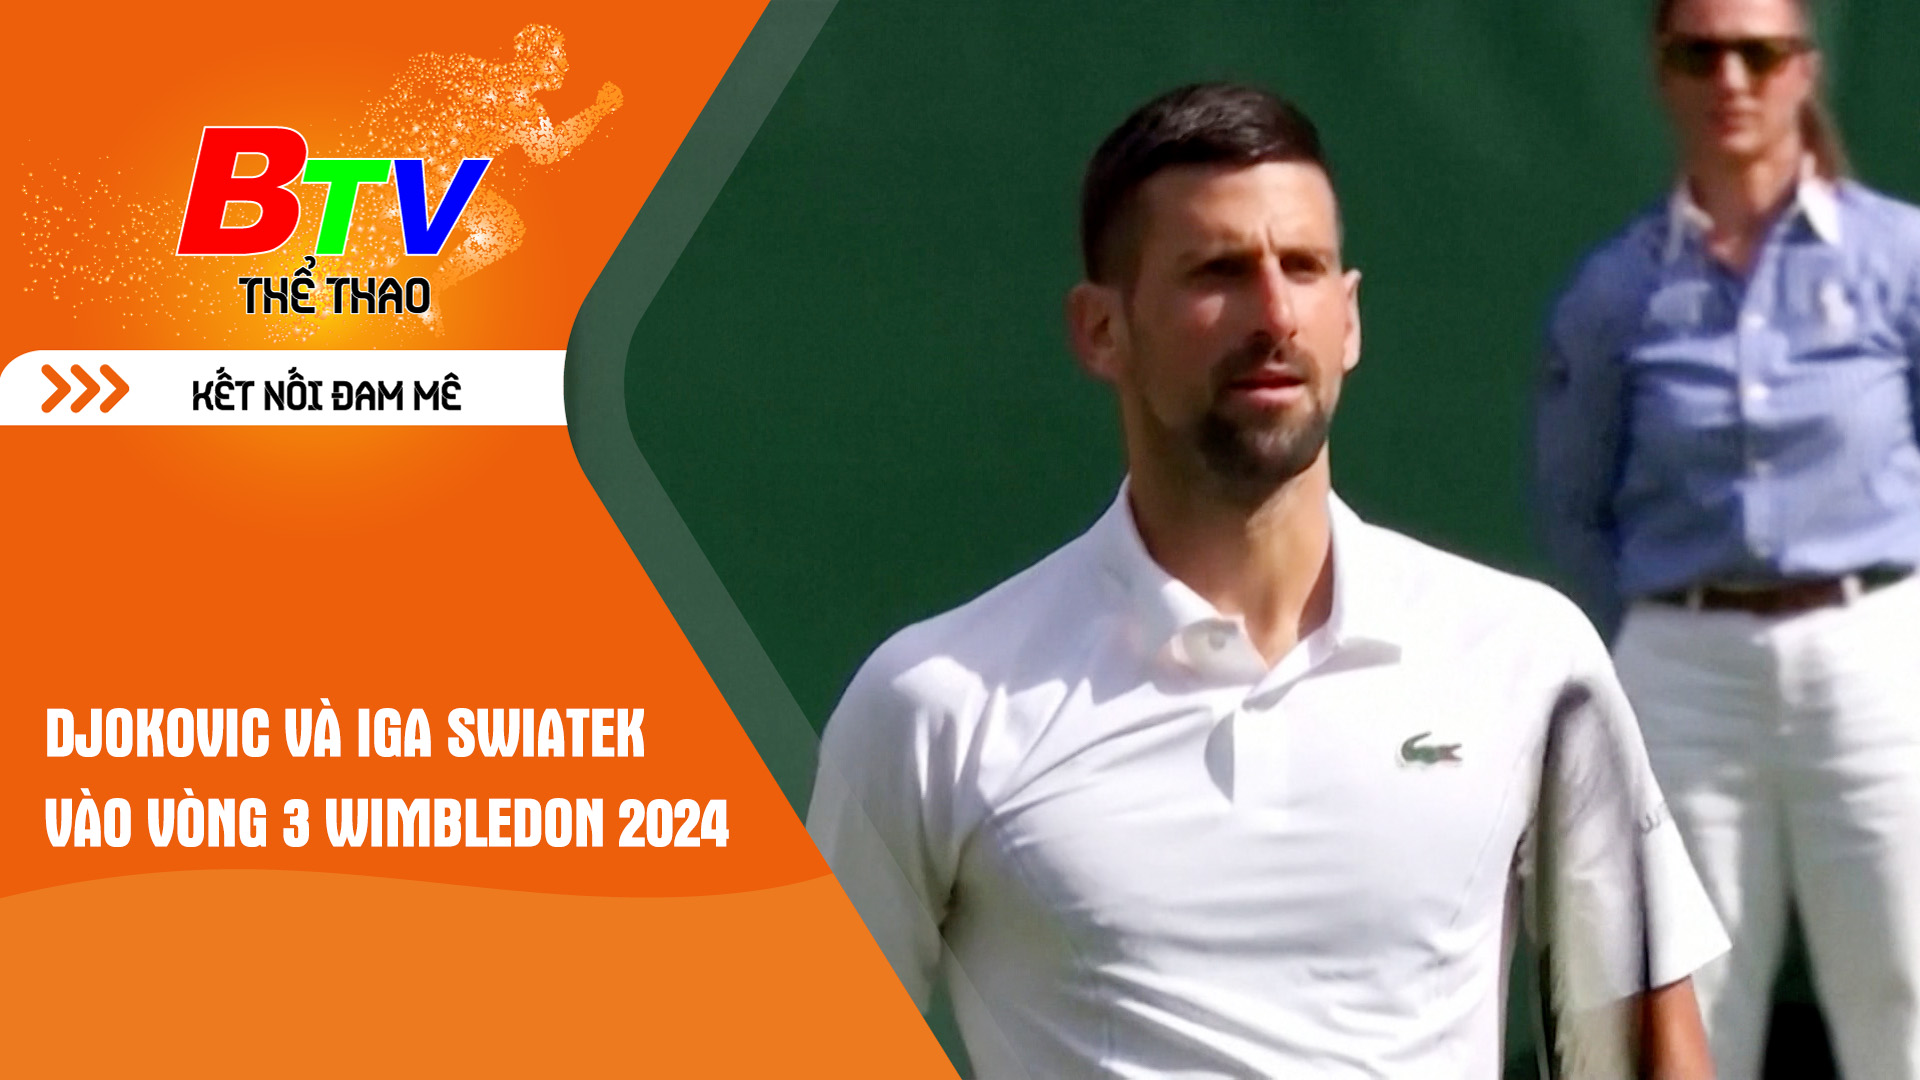 Djokovic và Iga Swiatek vào vòng 3 Wimbledon 2024 | Tin Thể thao 24h